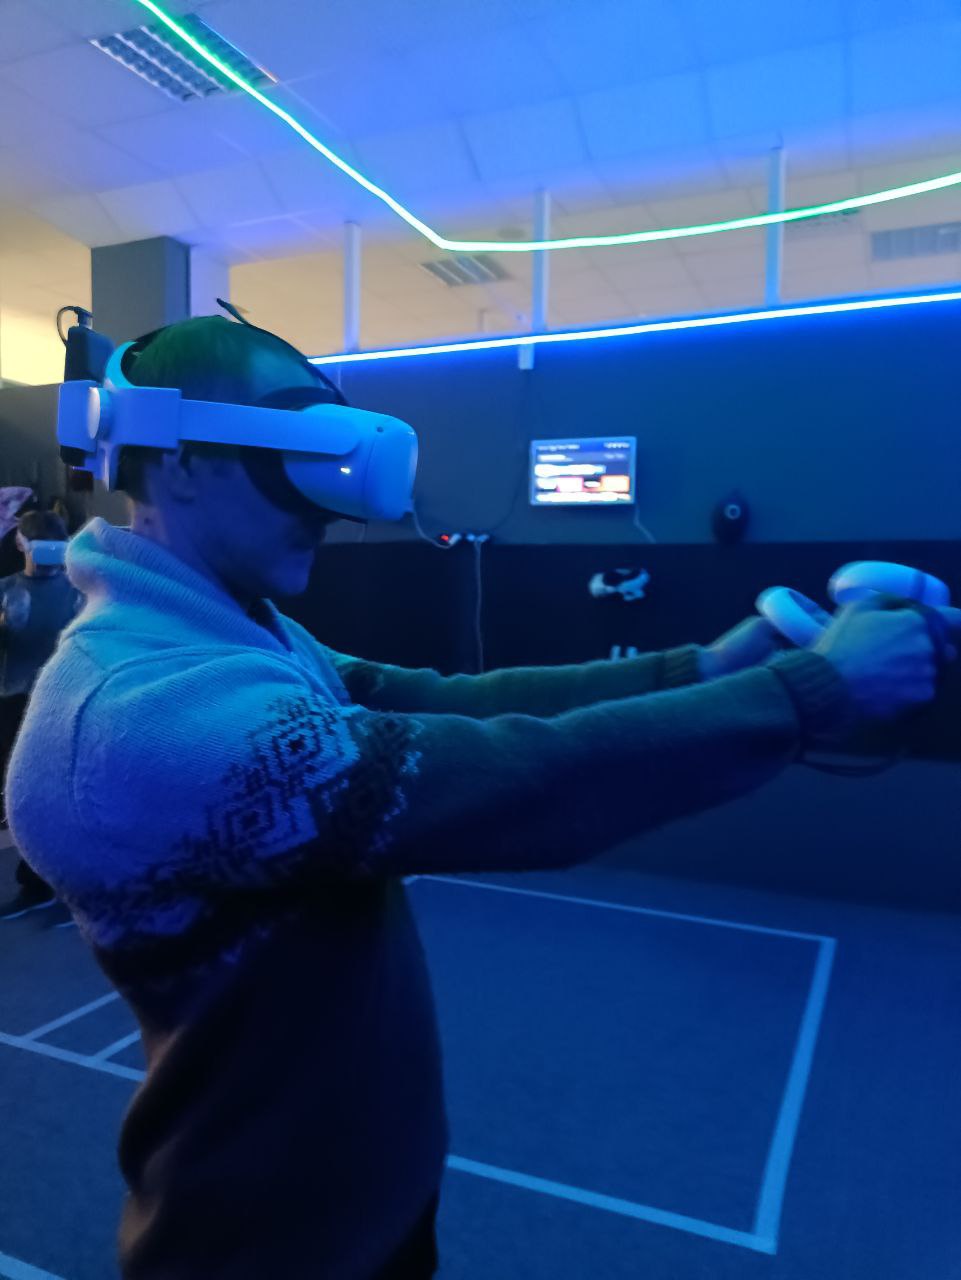 Аренда зала для игры в шлемах виртуальной реальности